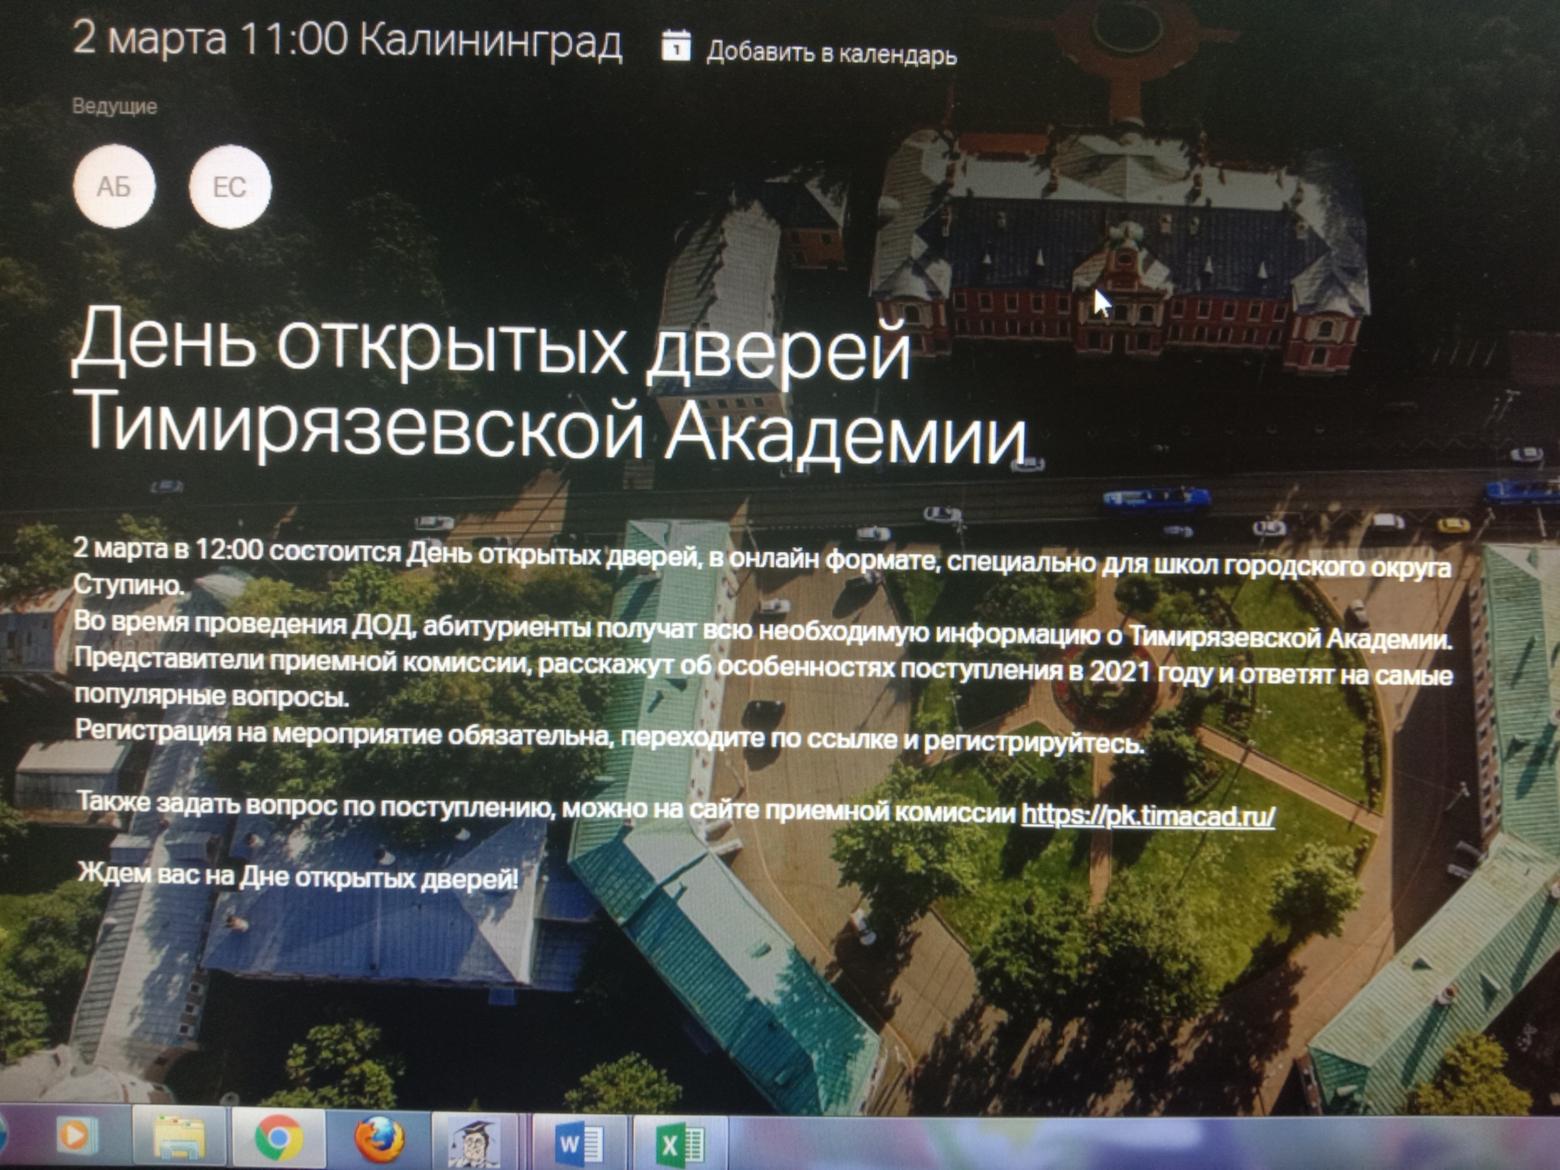 Московская сельскохозяйственная академия имени К.А.Тимирязева провела День открытых дверей в формате онлайн